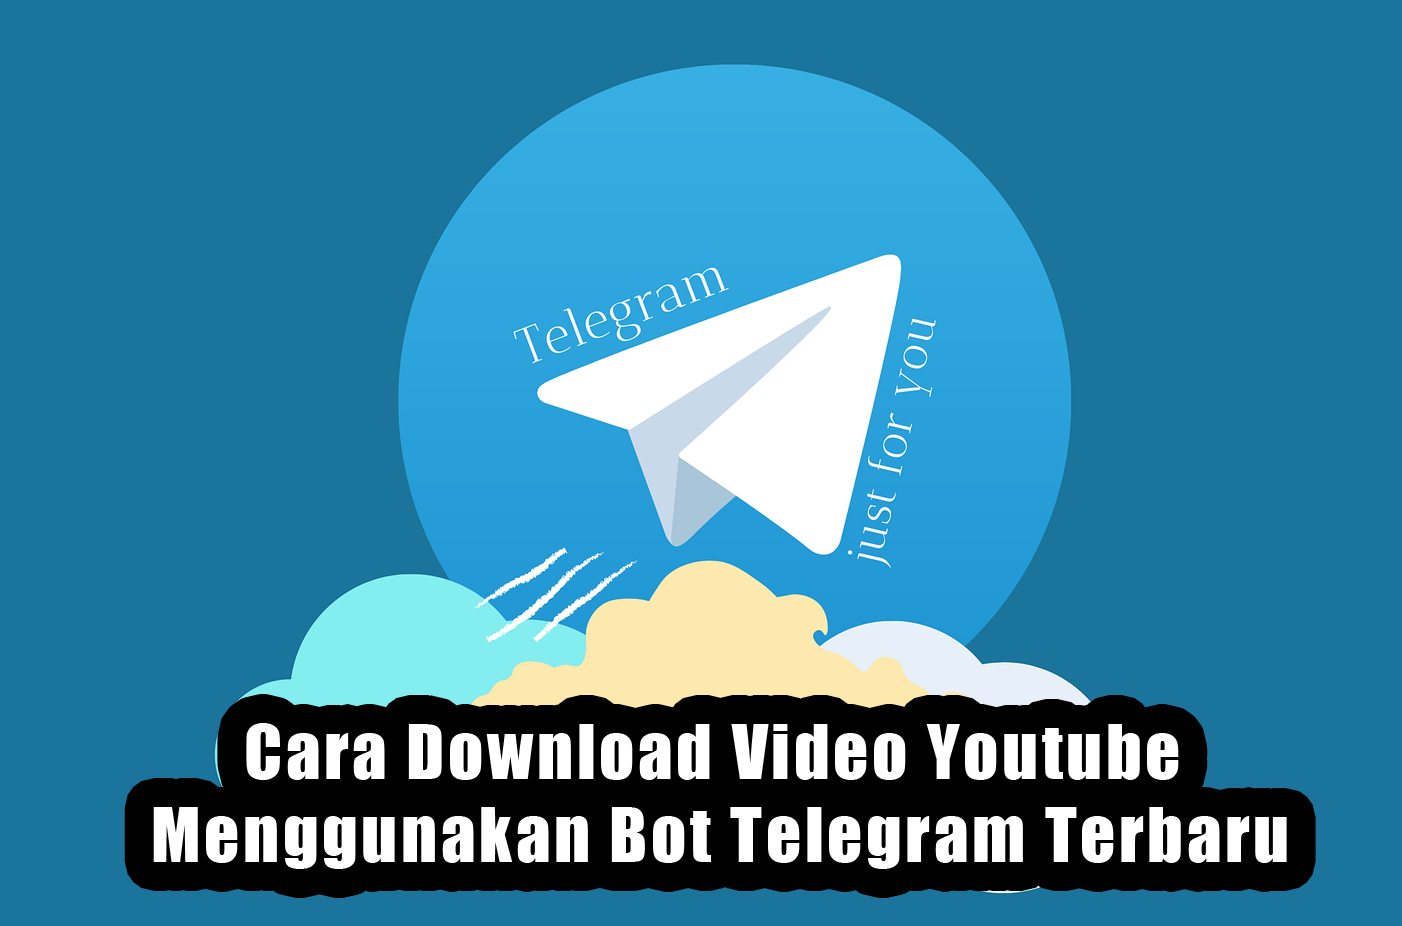 Cara Download Video Youtube Menggunakan Bot Telegram Terbaru